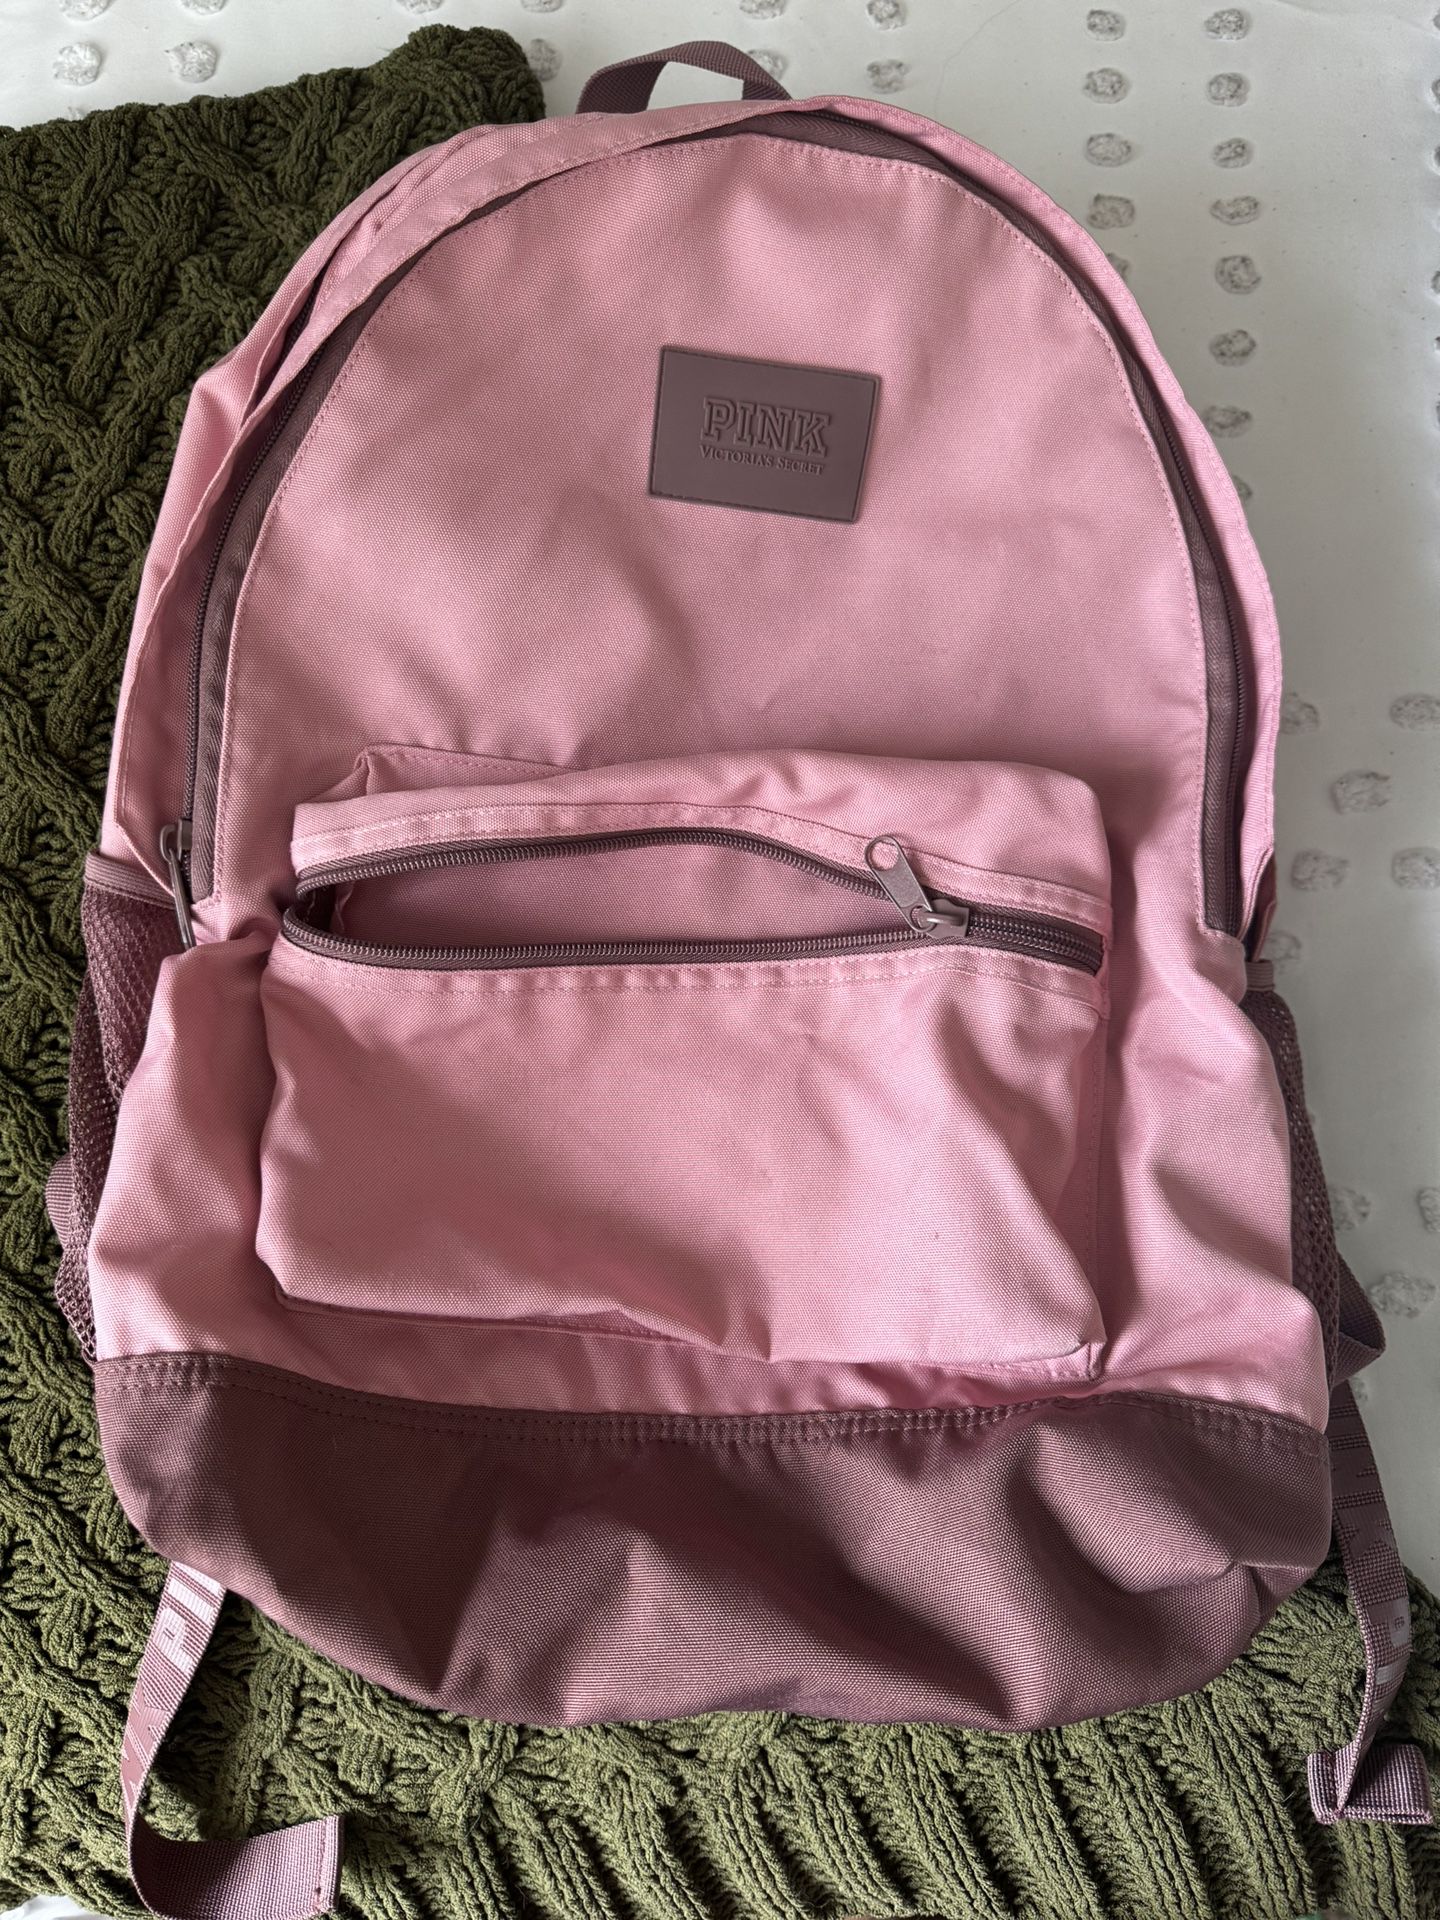 victoria secret PINK backpack